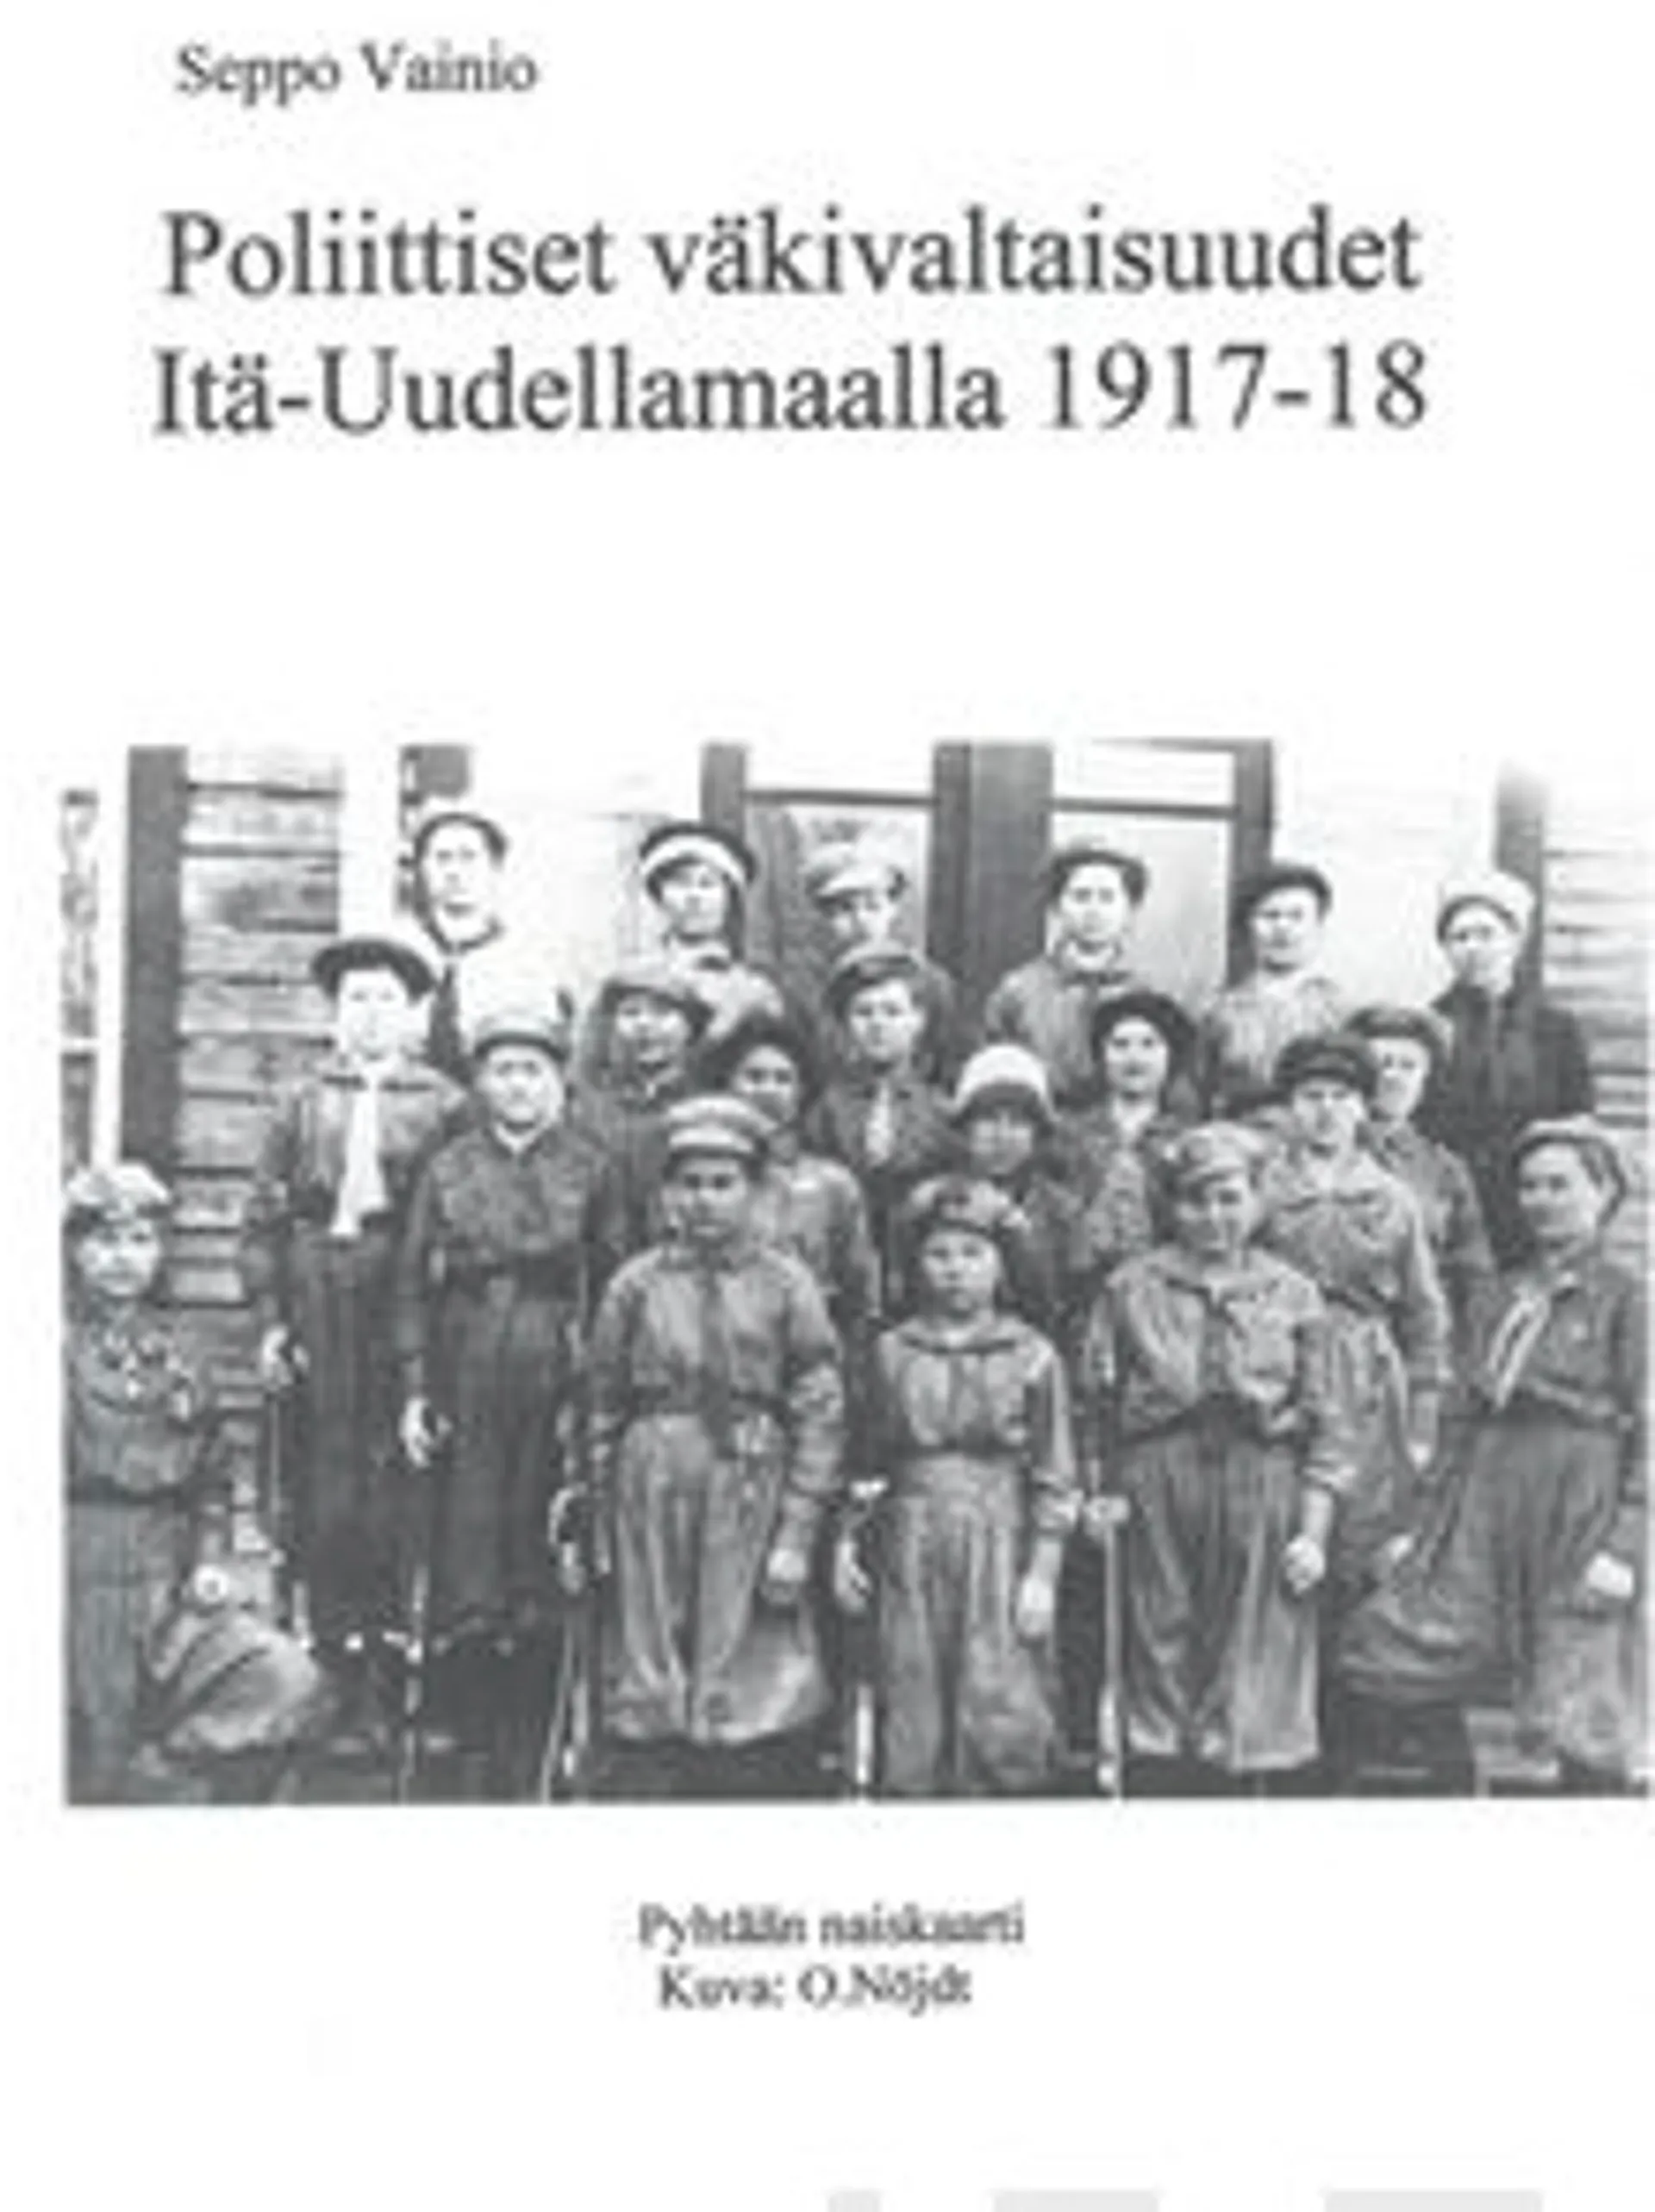 Vainio, Poliittiset väkivaltaisuudet Itä-Uudellamaalla 1917-18